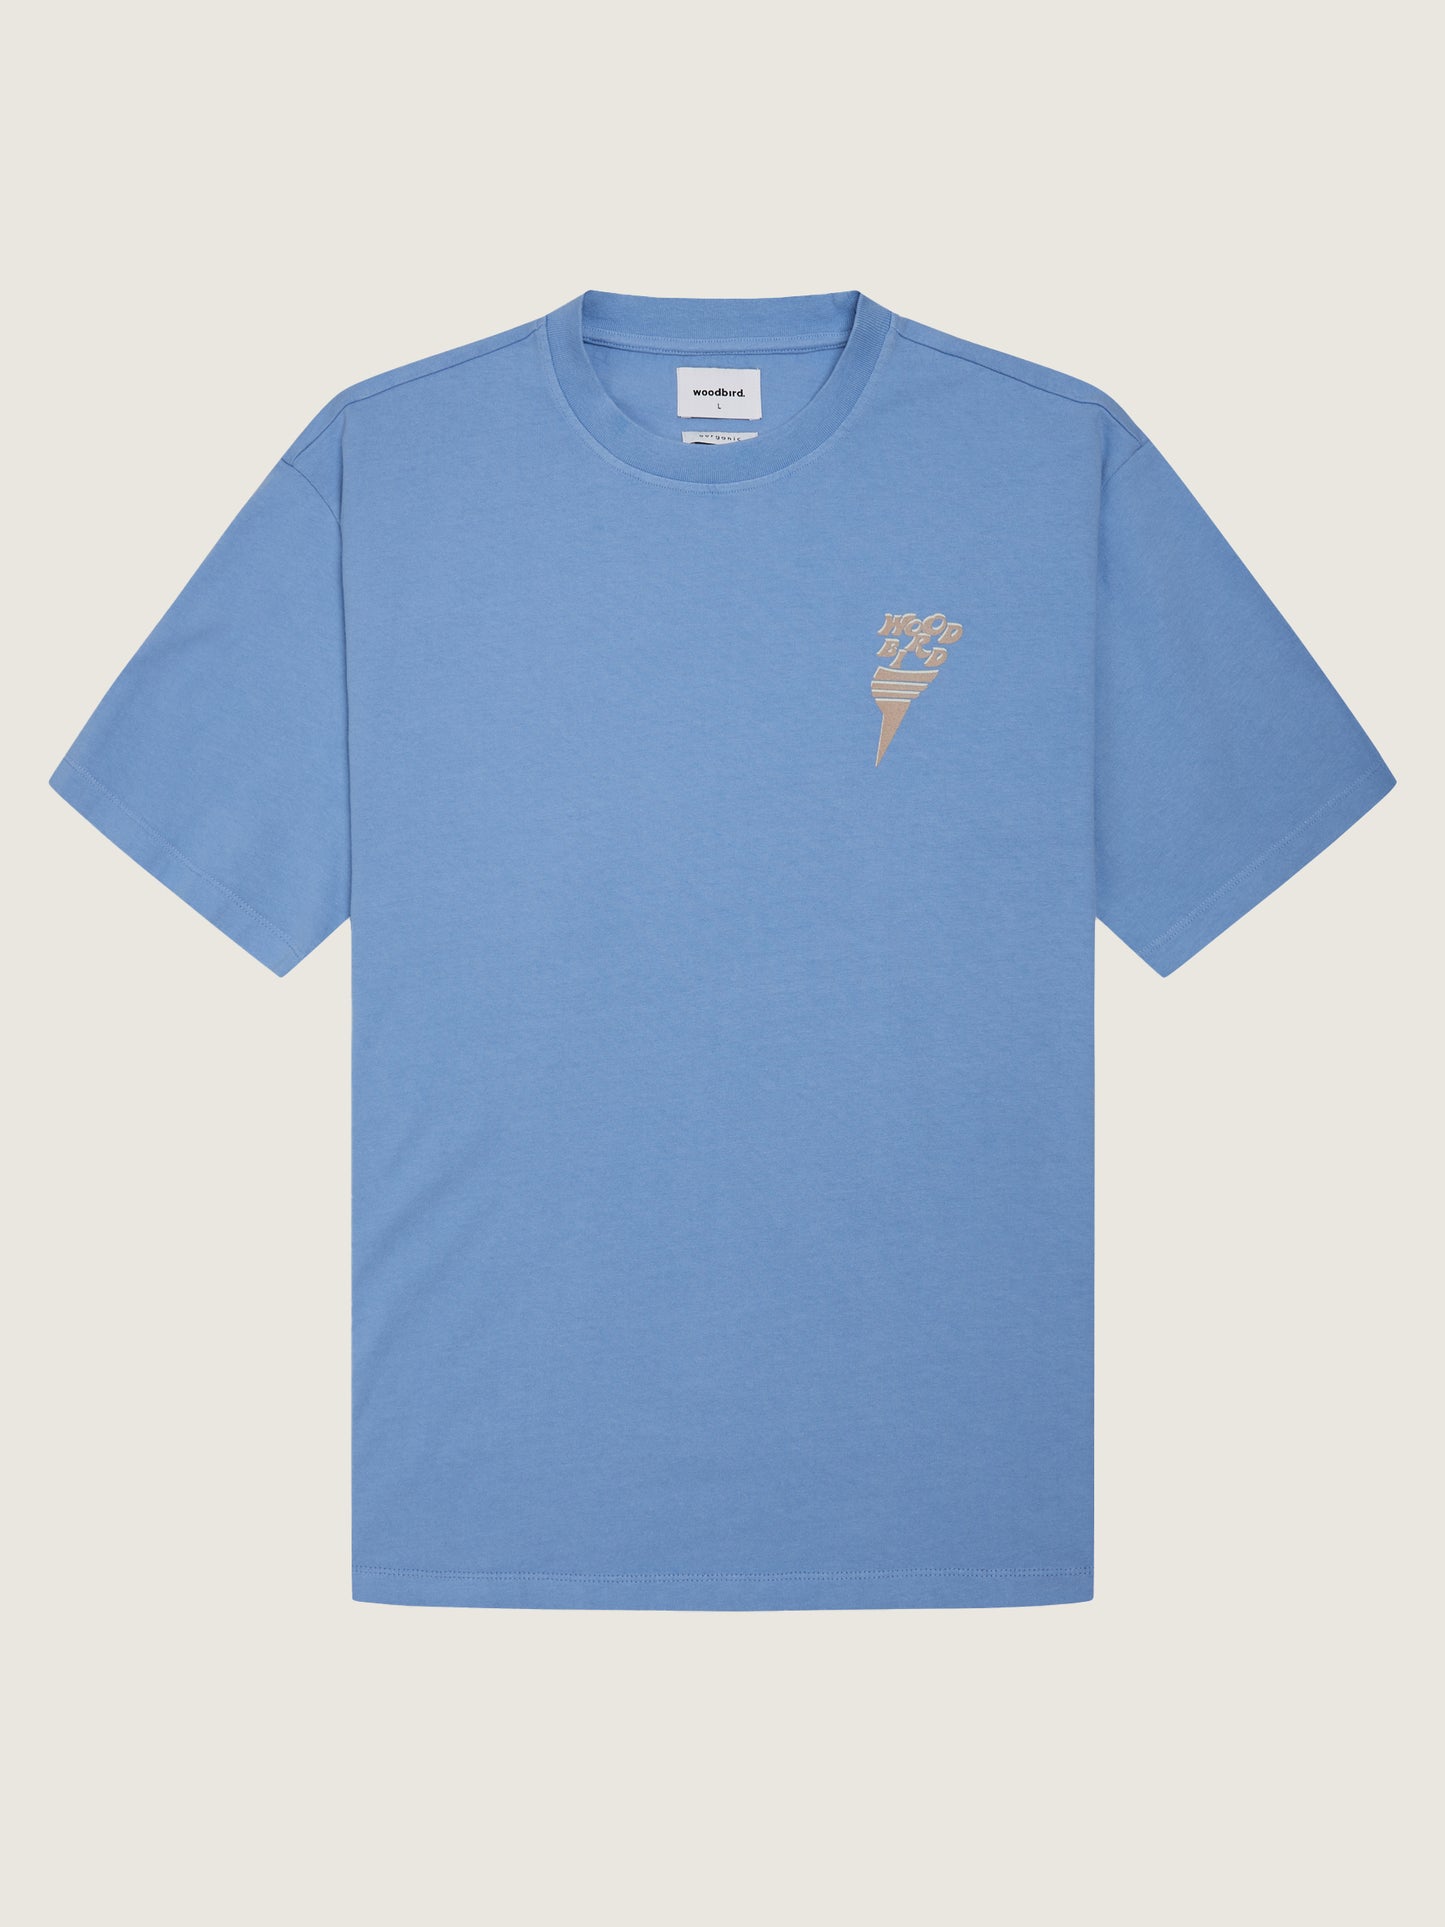 Woodbird Baine Raven Tee T-Shirts Light Blue